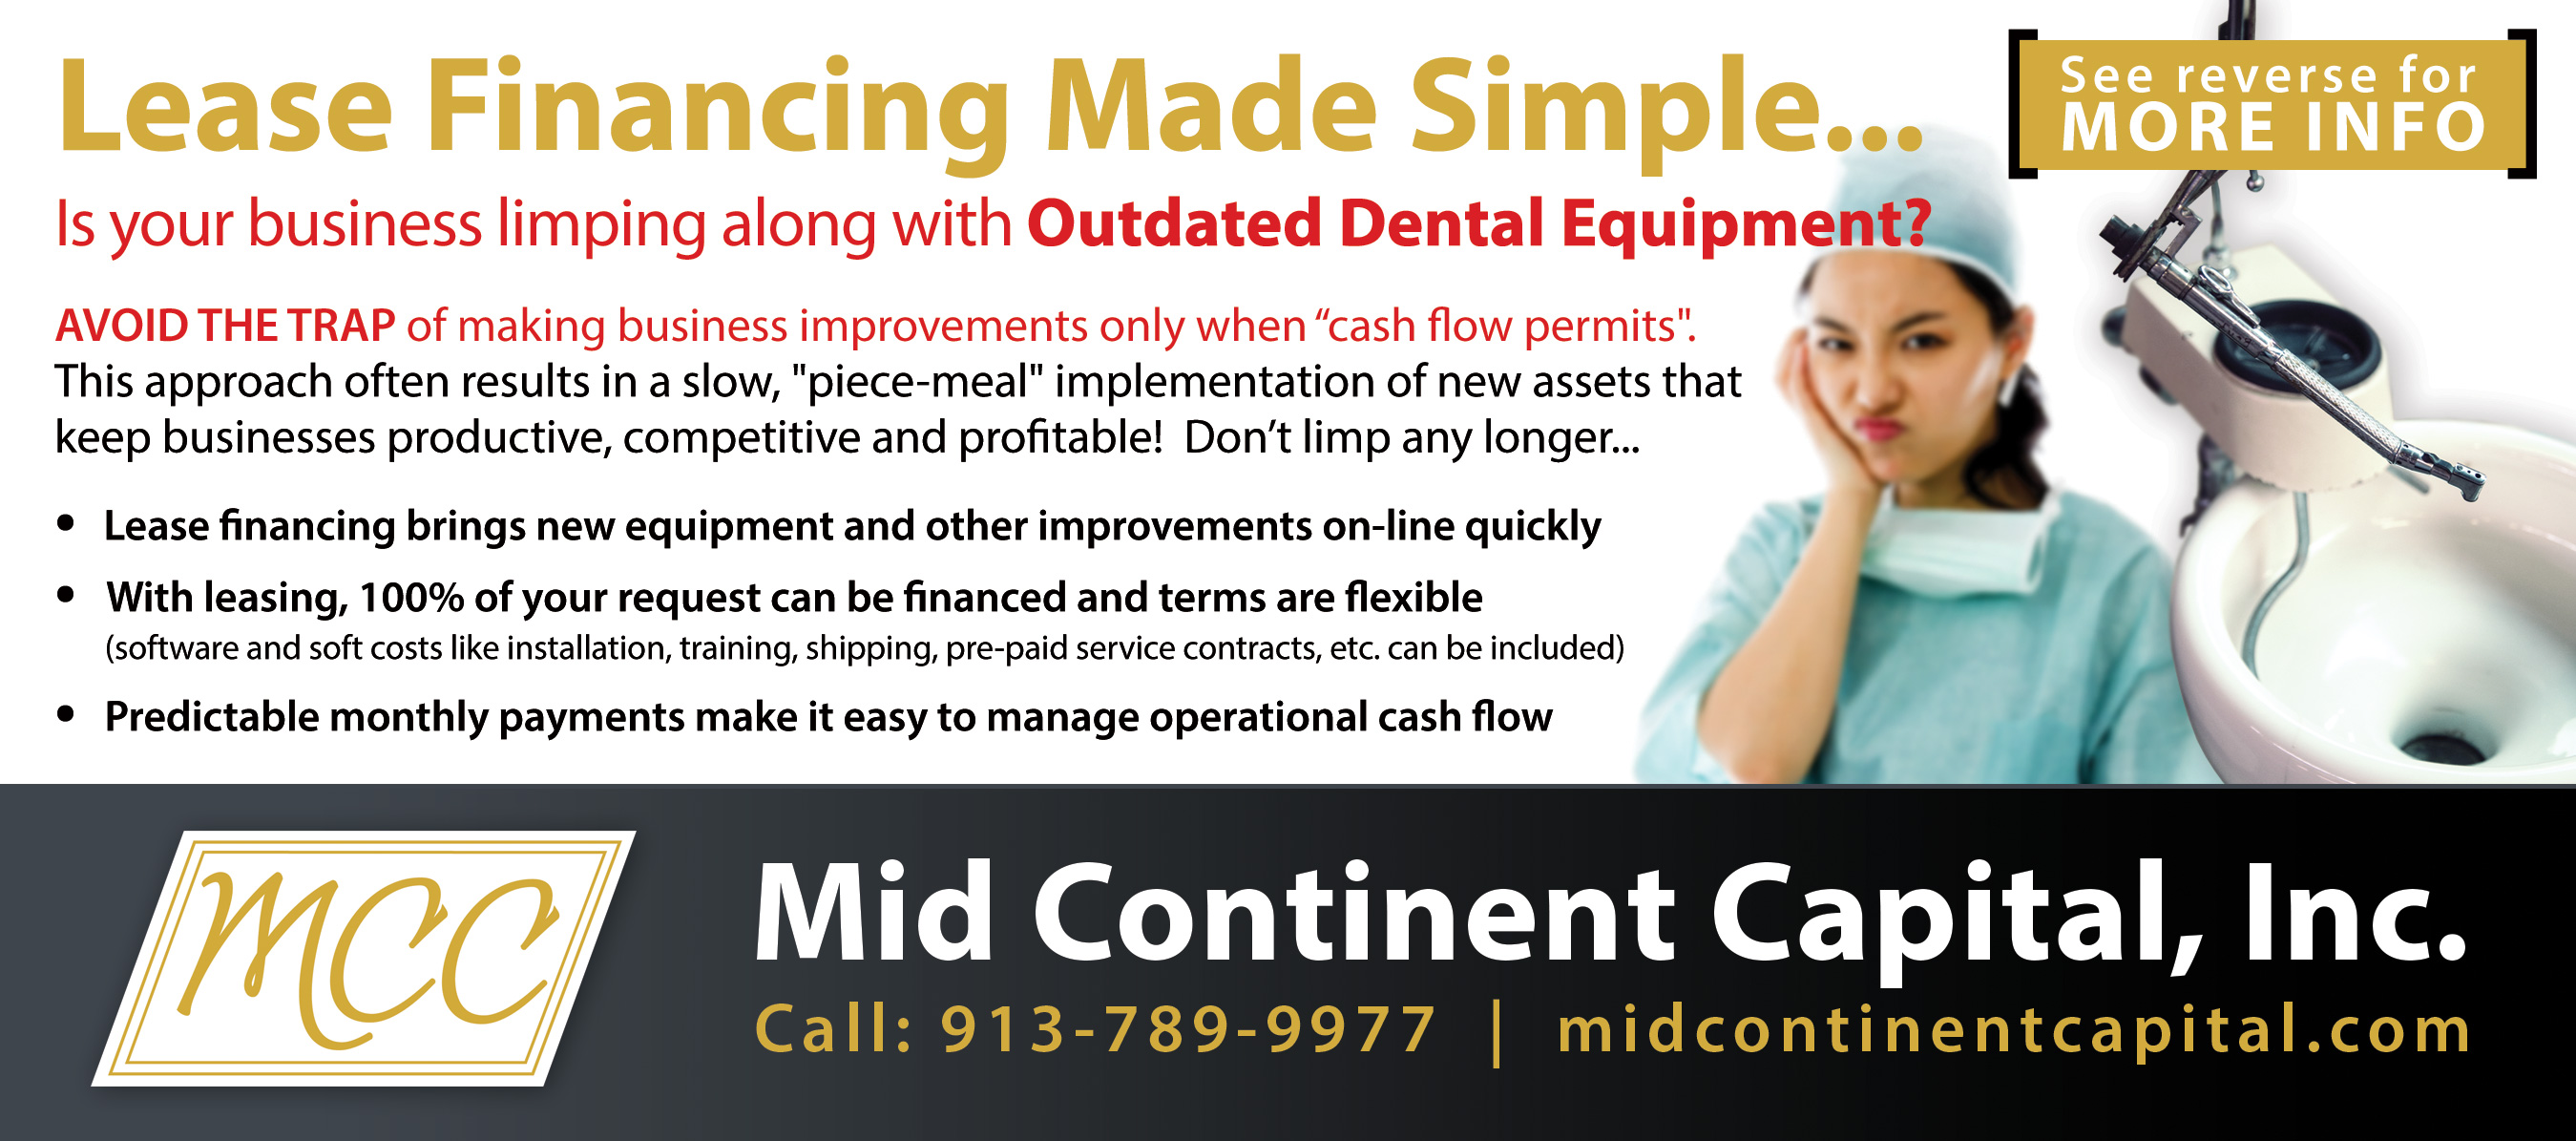 dental lease financing information